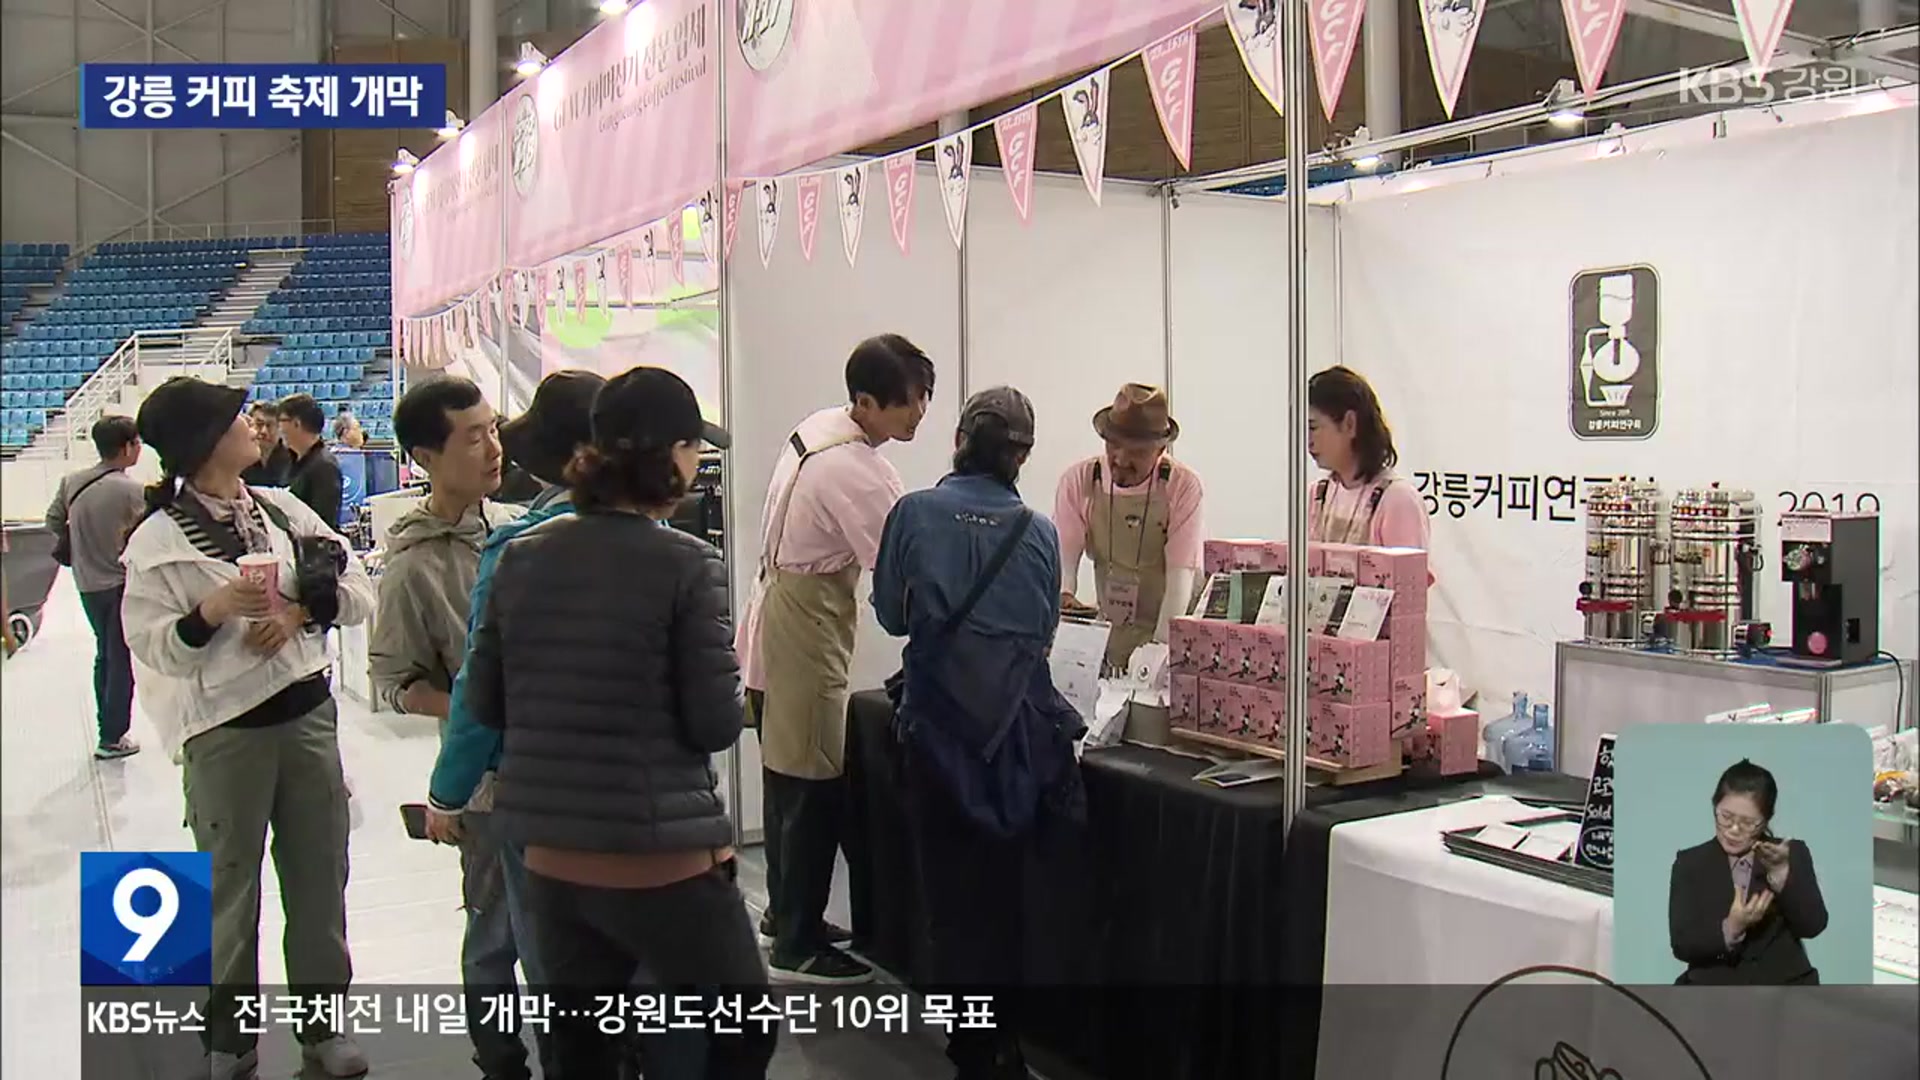 강릉 대표 가을 축제 ‘커피축제’ 개막…행사 풍성